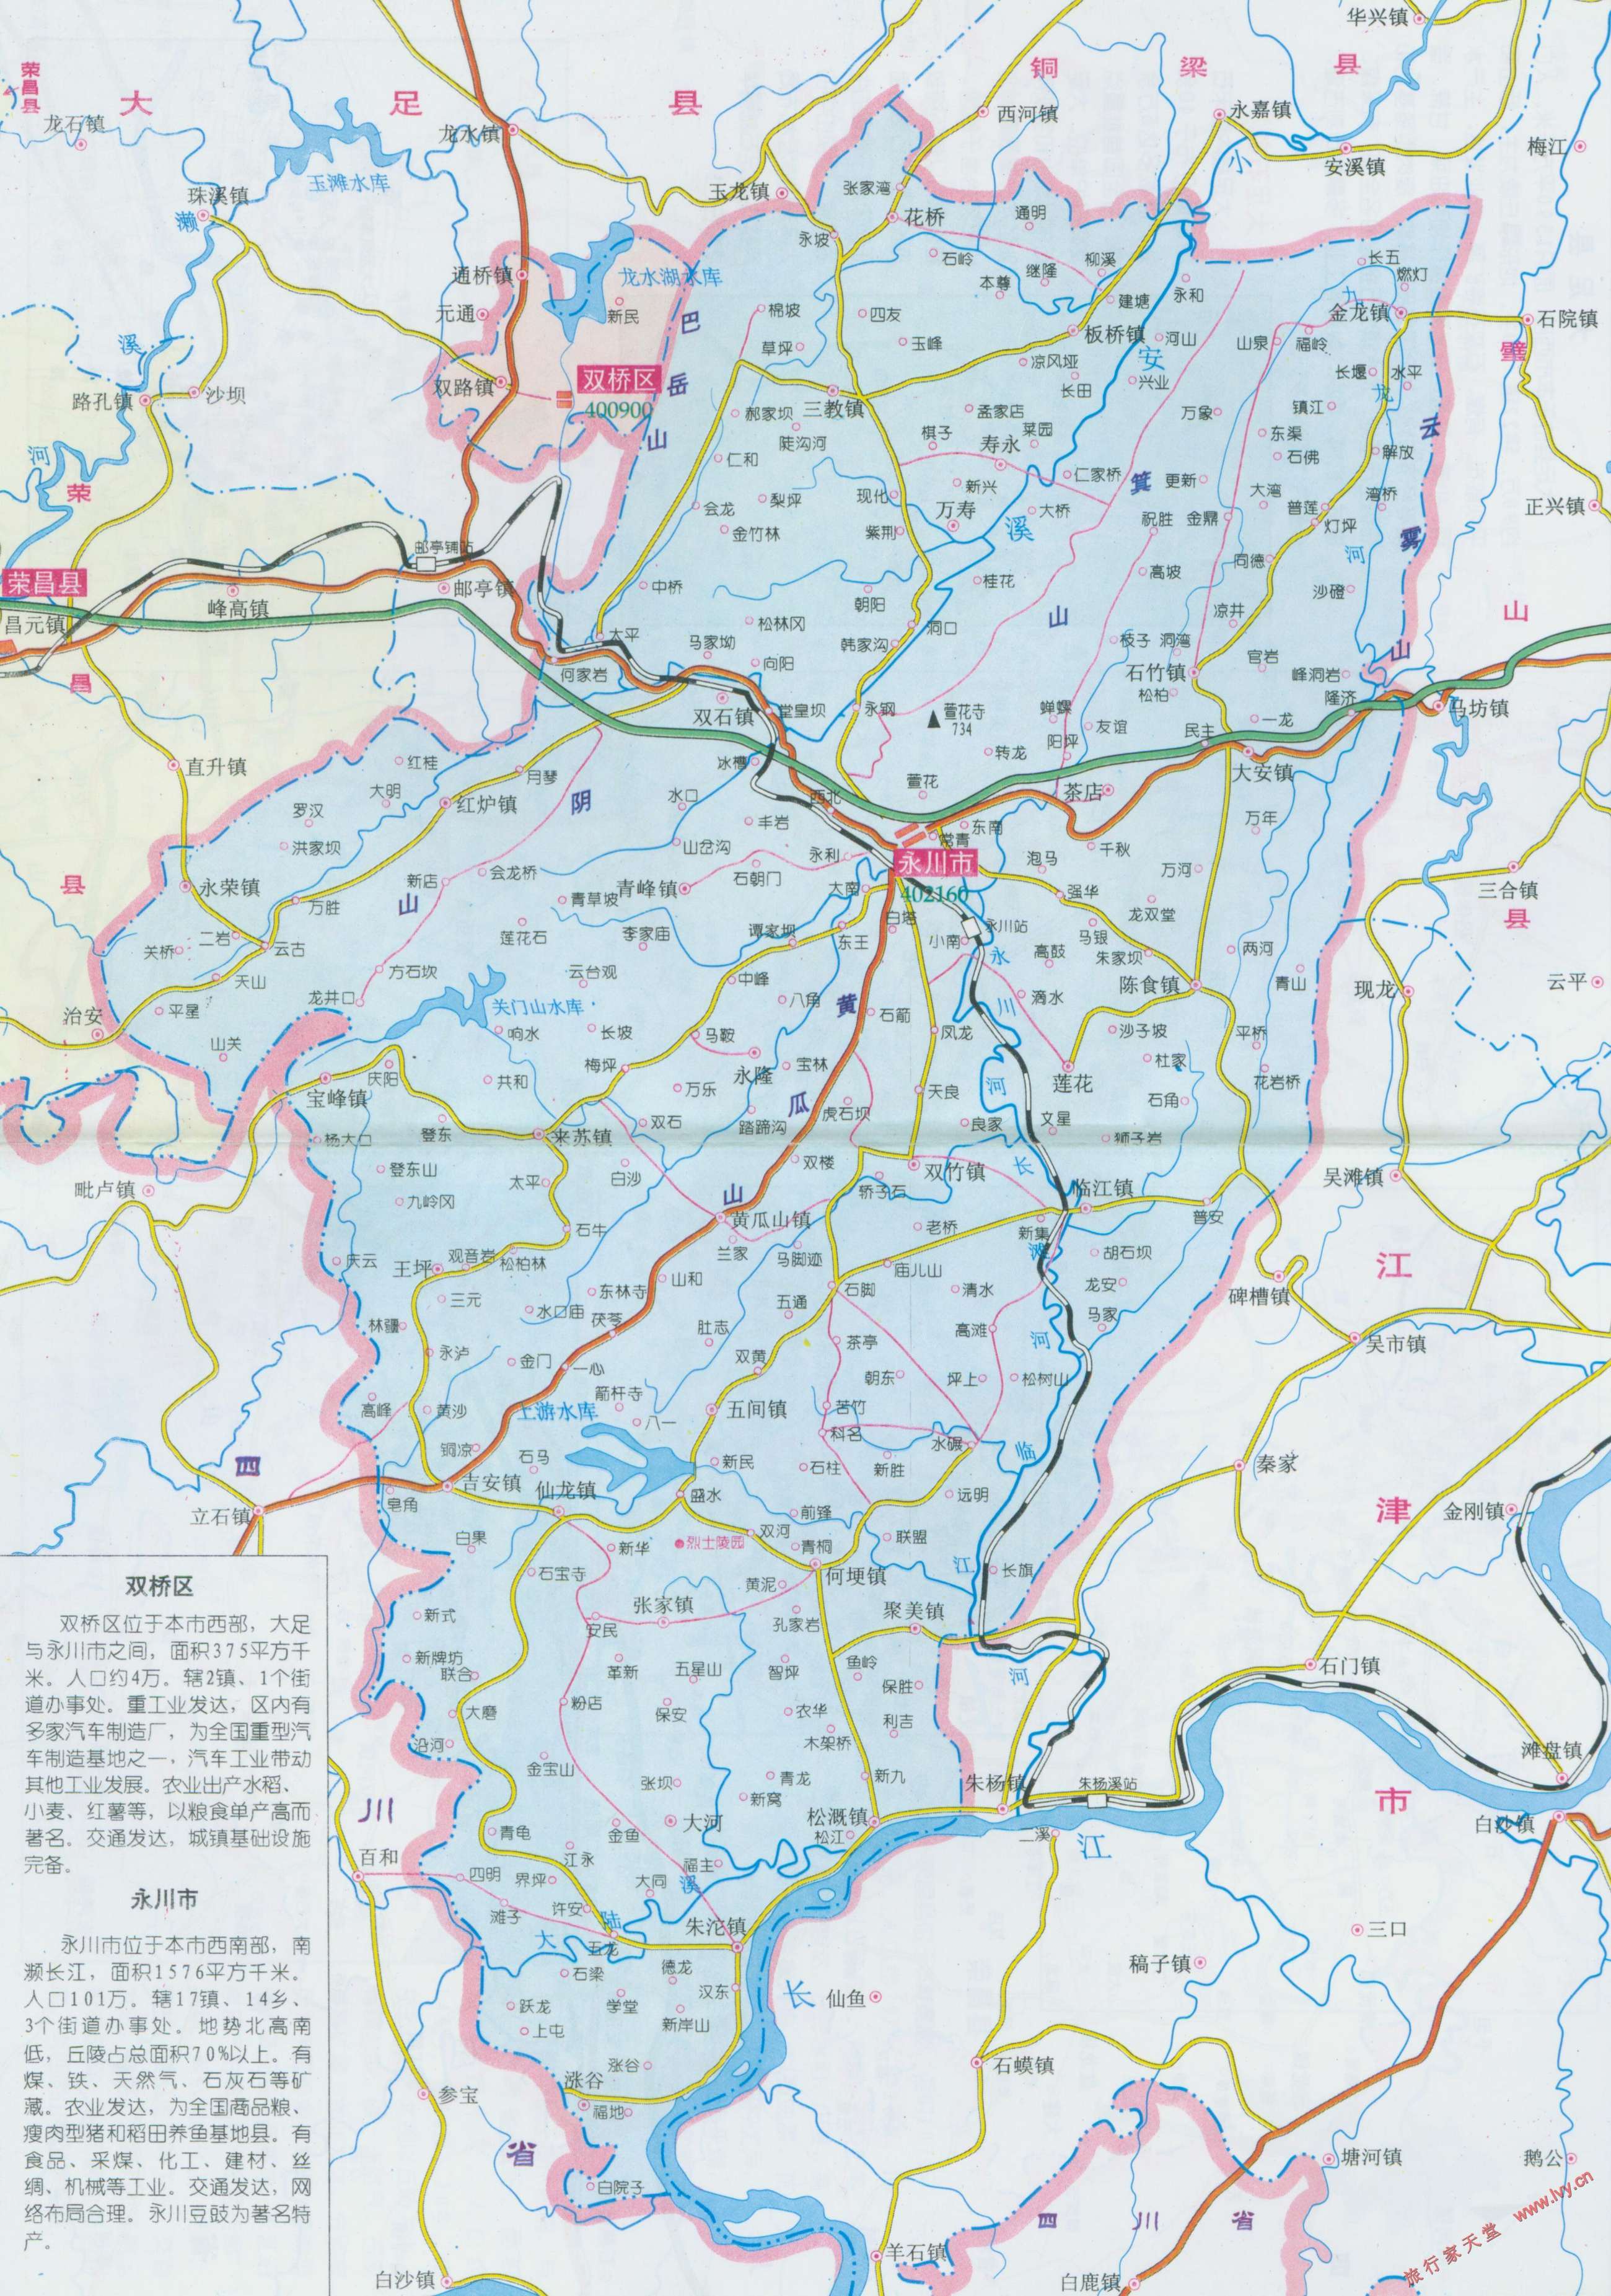 永川市区划交通地图 重庆地图库图片